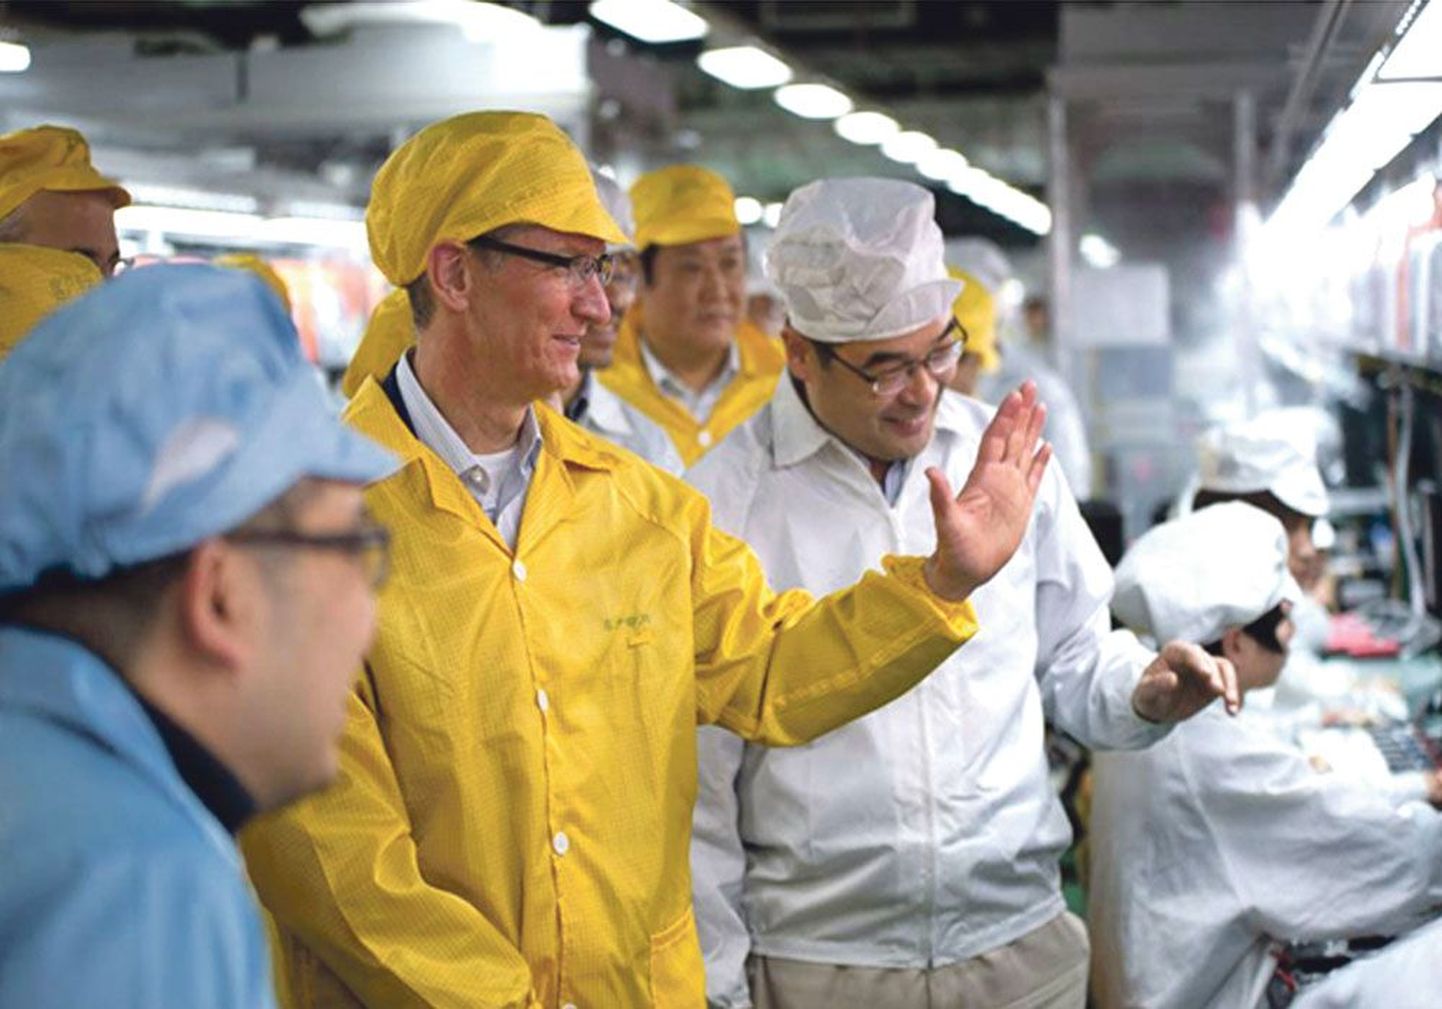 Гендиректор Apple Тим Кук знакомится со сборкой iPhone на заводе компании Foxconn в технологическом парке в китайском городе Чжэнчжоу. Недавно Кук пообещал, что предприятие инвестирует 100 млн долларов в то, чтобы вернуть производство компьютеров в США.